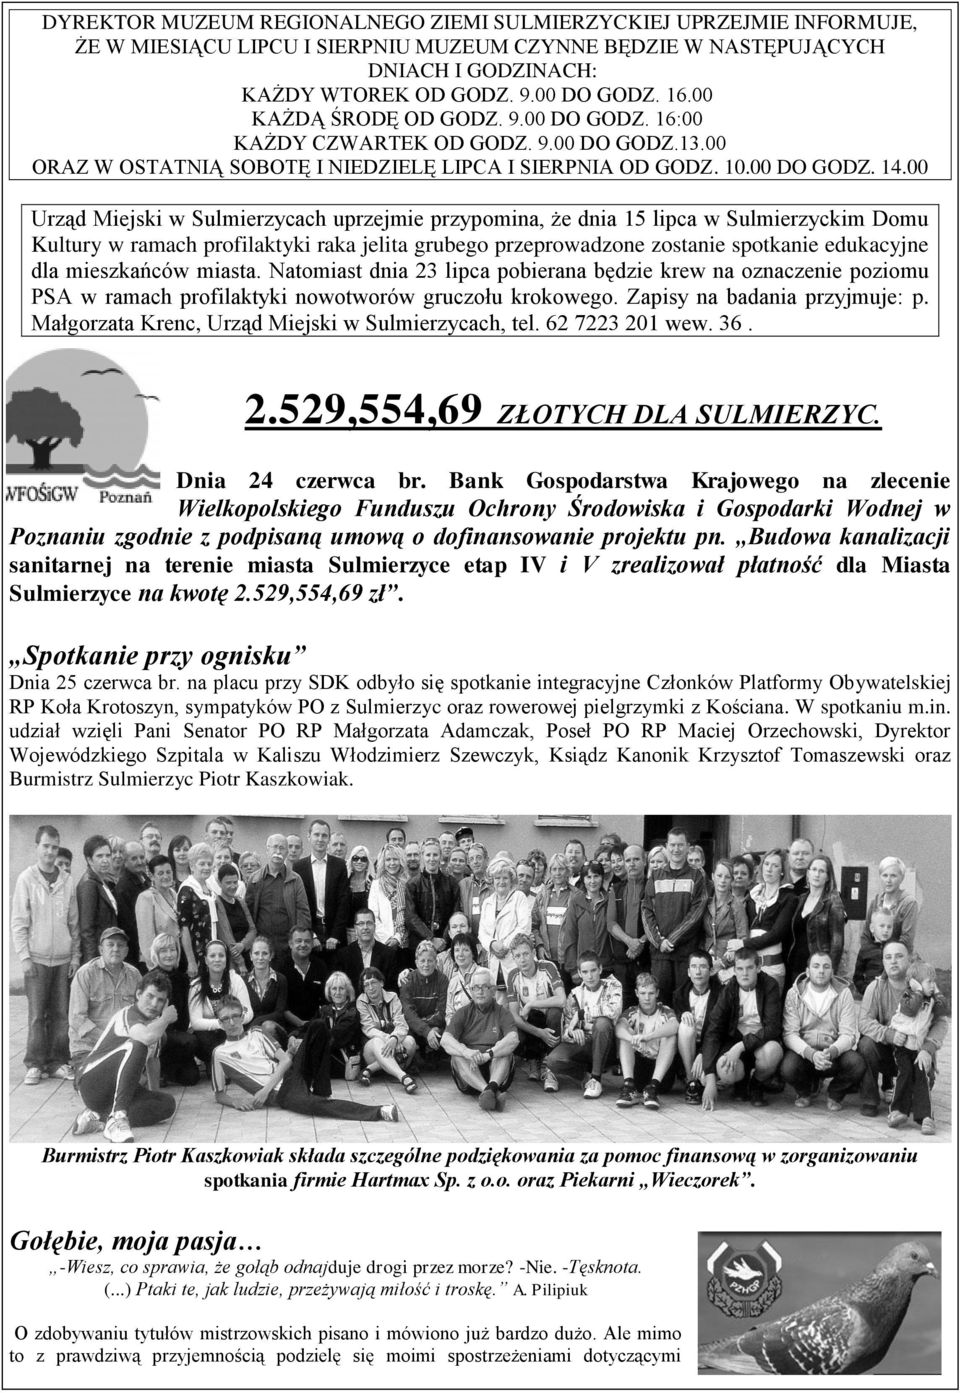 00 Urząd Miejski w Sulmierzycach uprzejmie przypomina, że dnia 15 lipca w Sulmierzyckim Domu Kultury w ramach profilaktyki raka jelita grubego przeprowadzone zostanie spotkanie edukacyjne dla